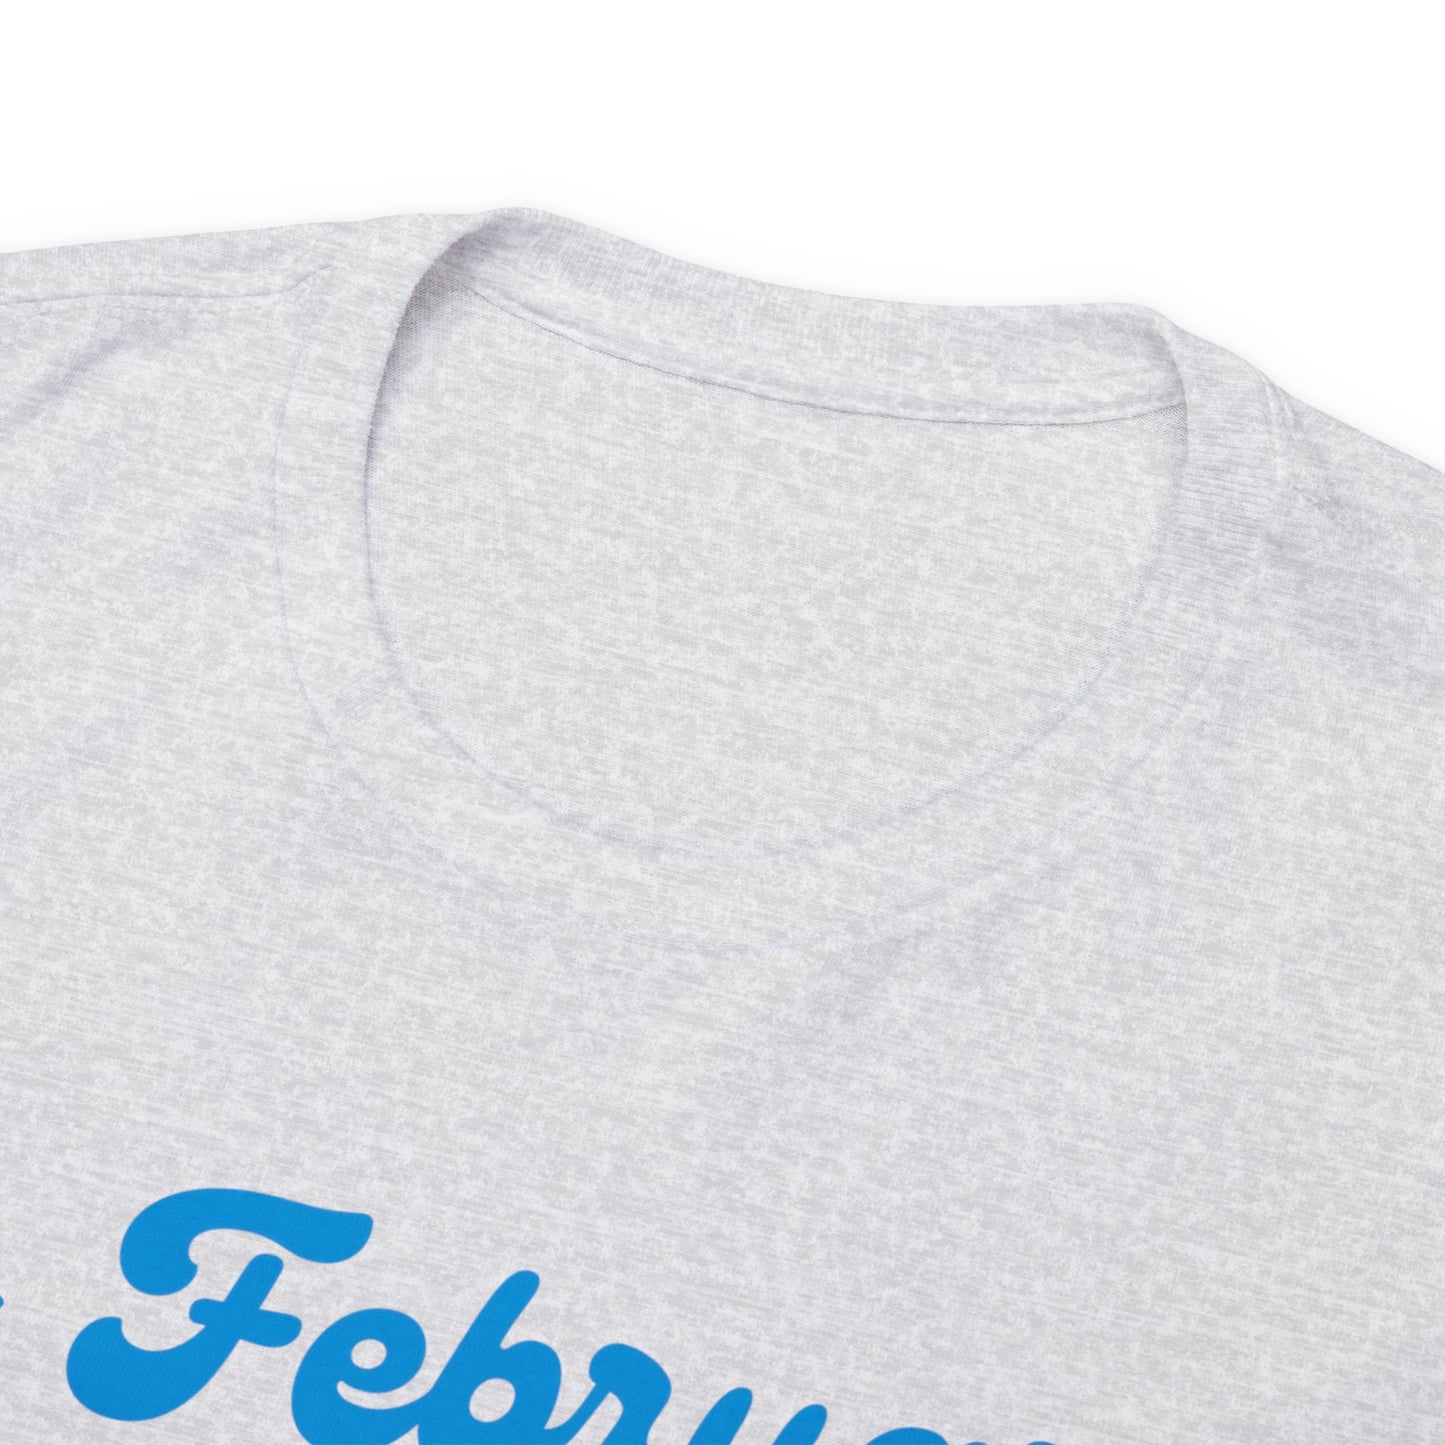 In February -we wear- ZEBRA, Unisex Heavy Cotton Tee